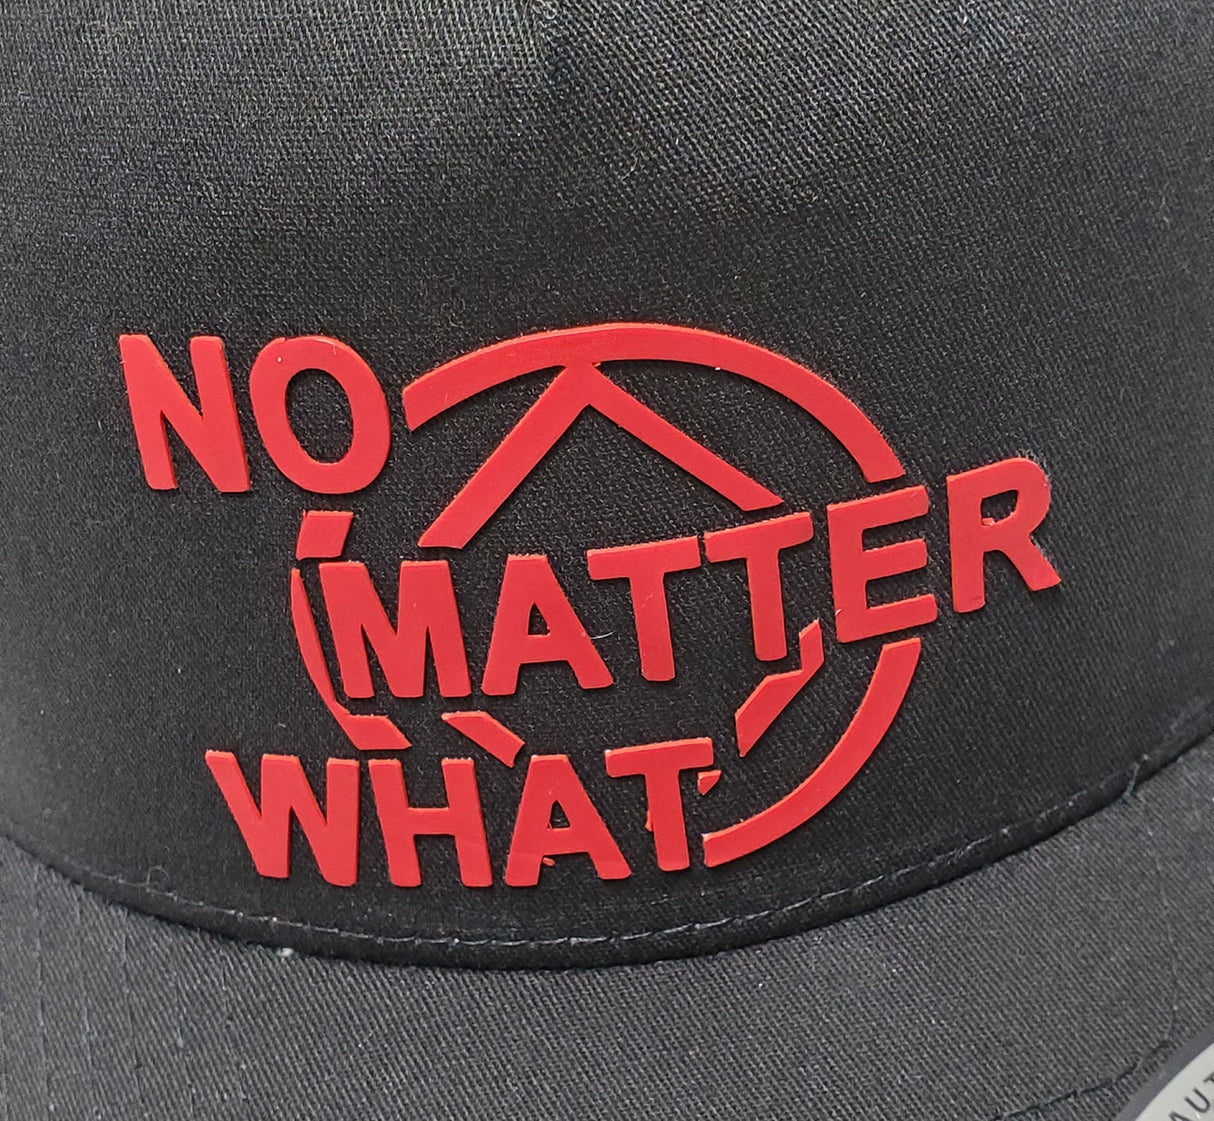 Trucker Cap - No Matter What Blk/Red